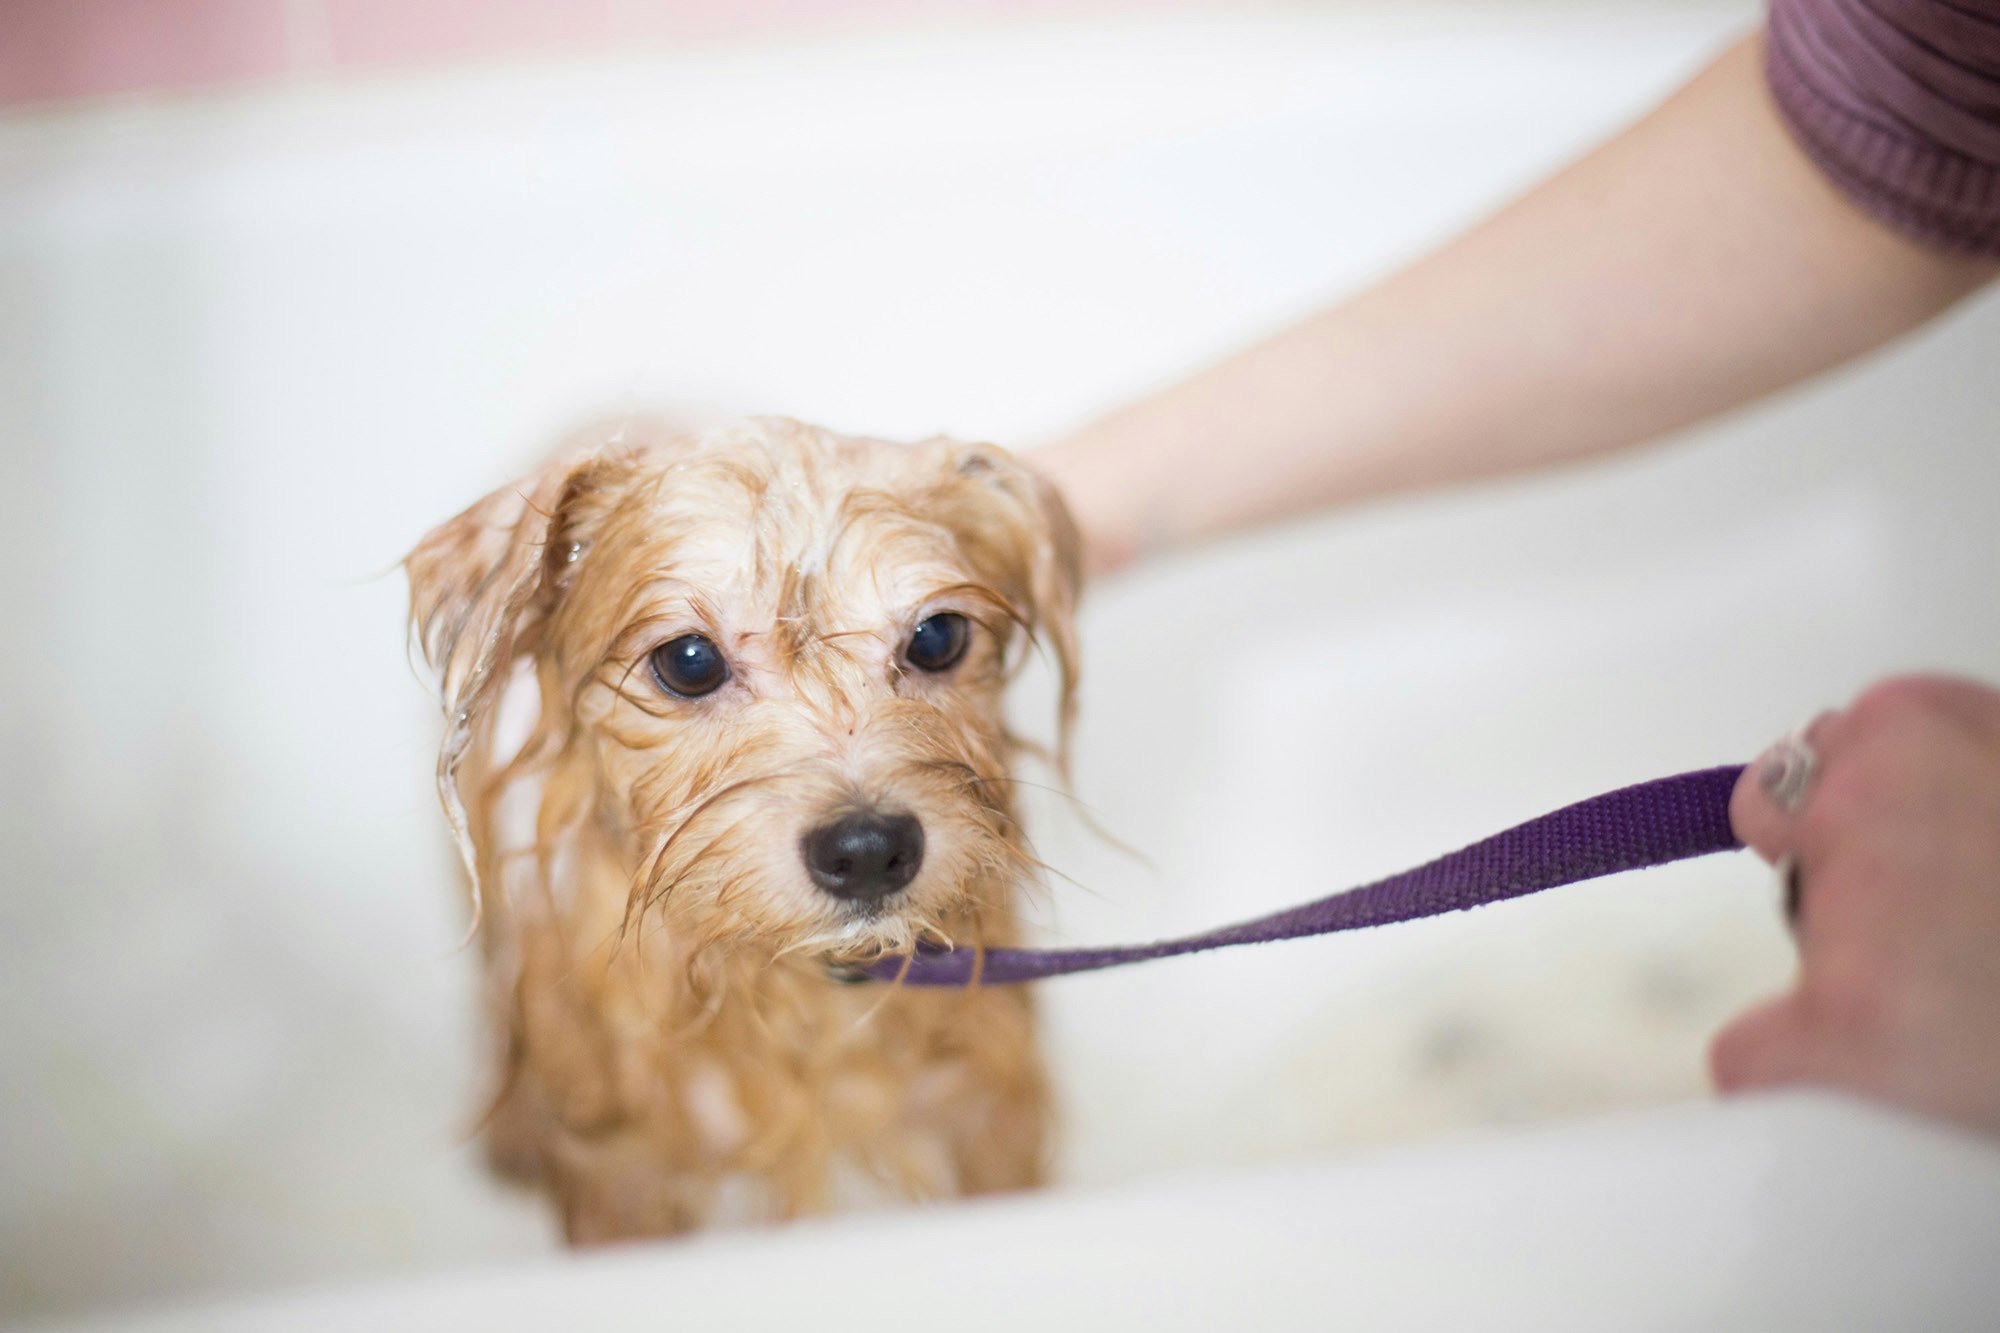 Vigyázzunk, hogy ne menjen víz, sem sampon a kutya szemébe, orrába, fülébe